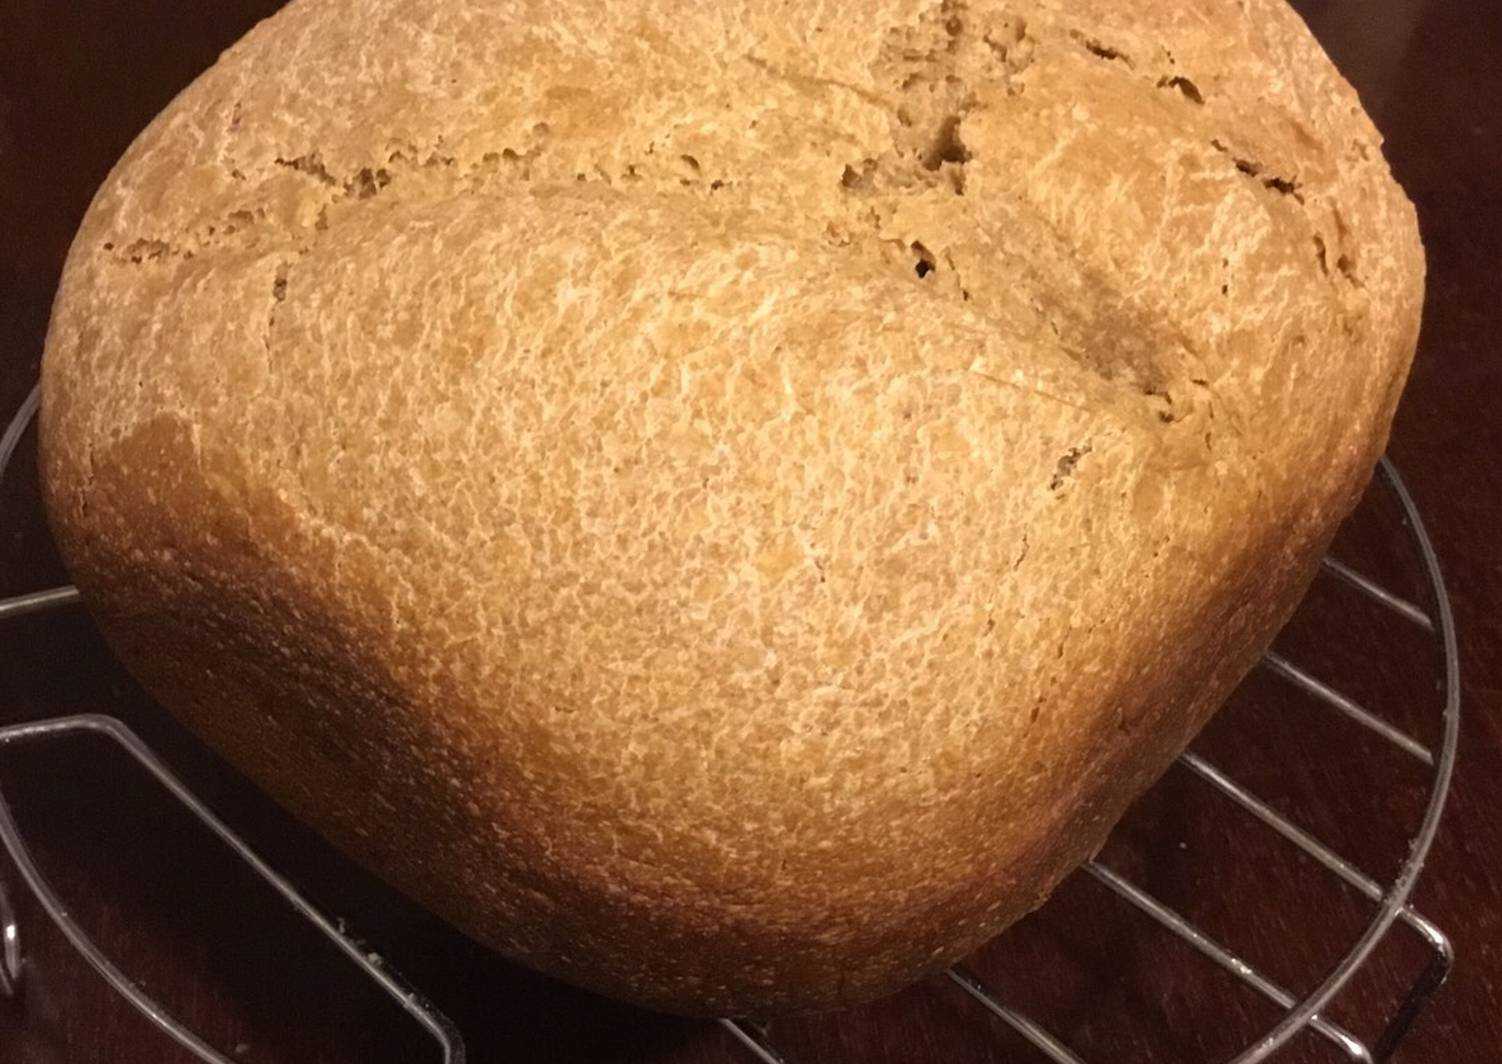 Домашний хлеб в духовке - как испечь вкусную выпечку по простым рецептам с фото